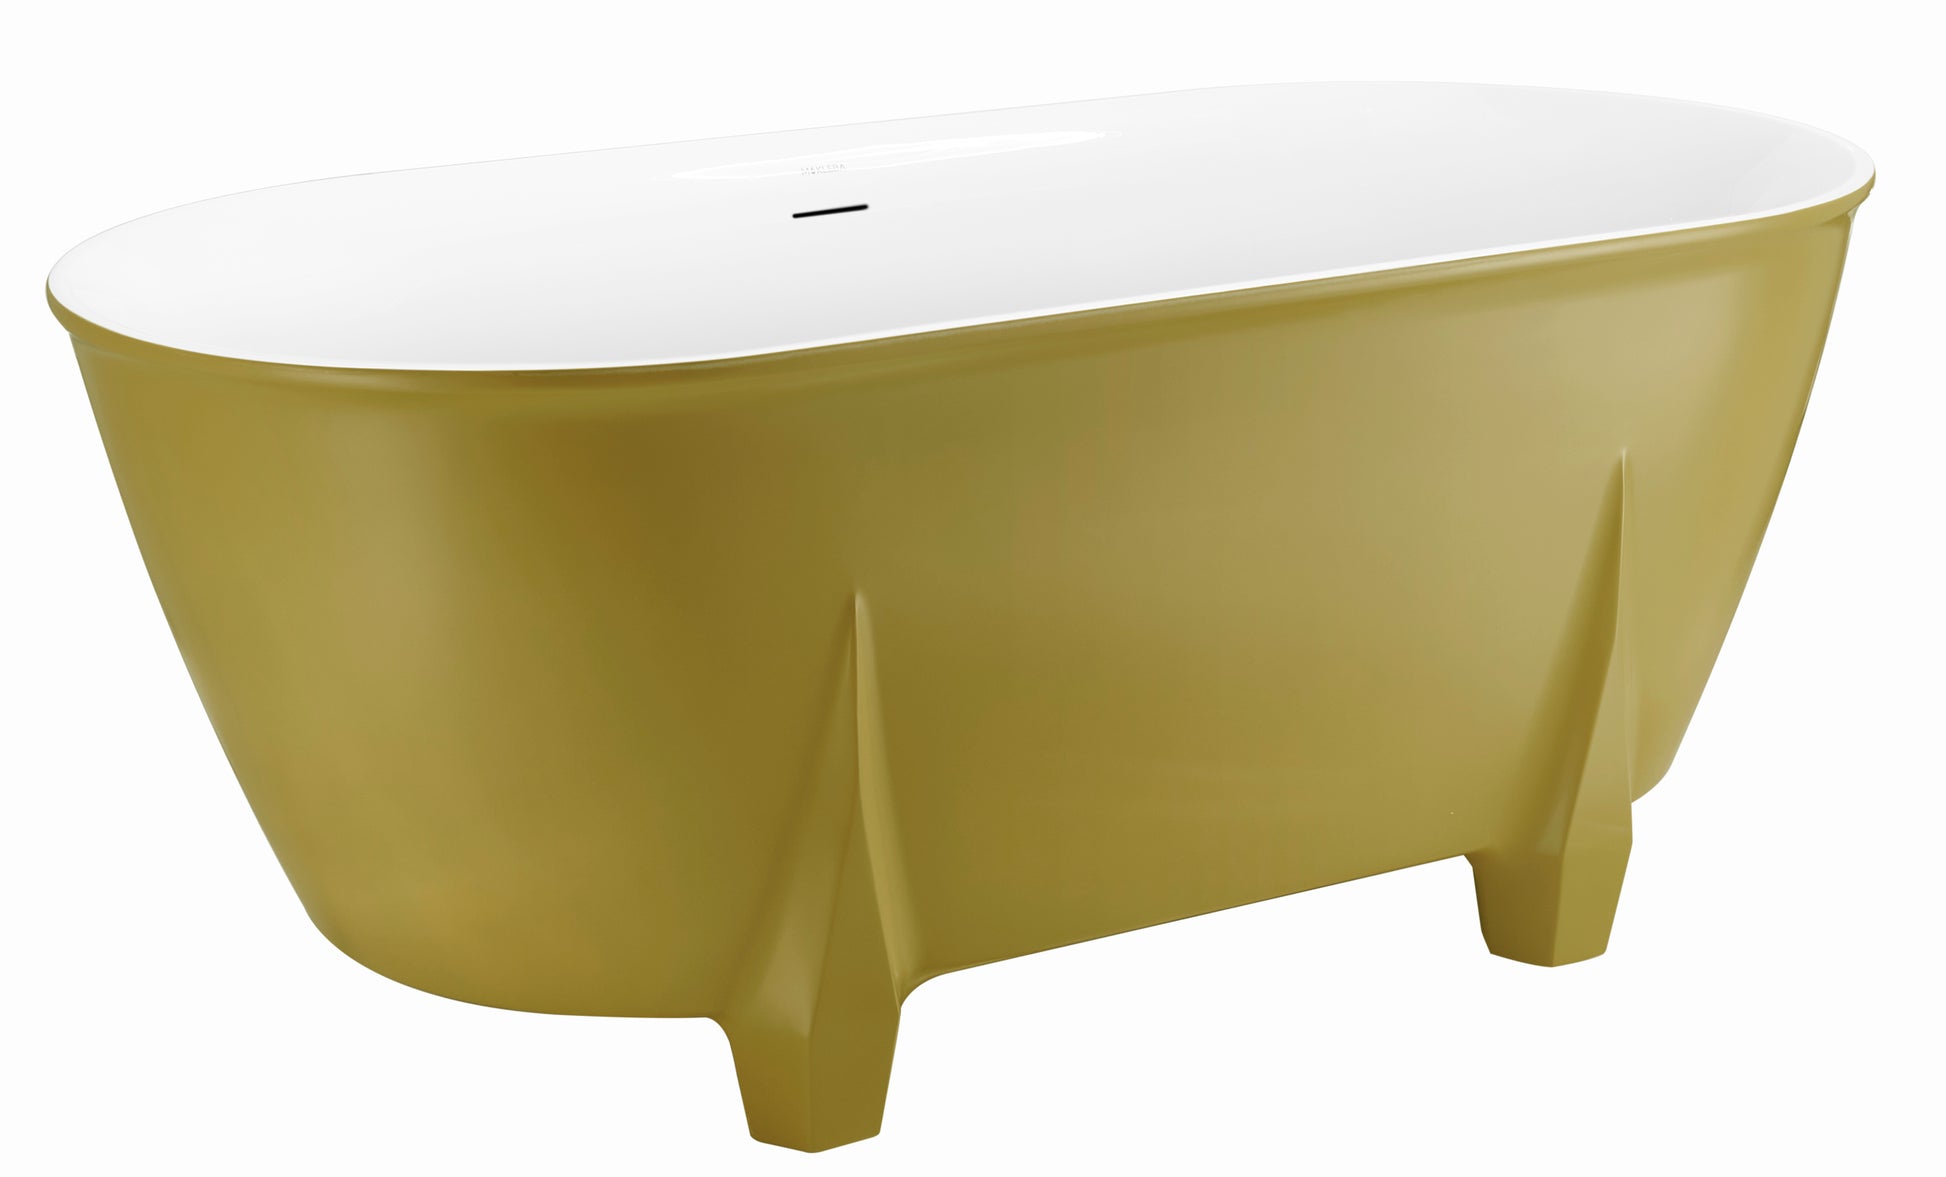 59" 100% Acrylic Freestanding Bathtub